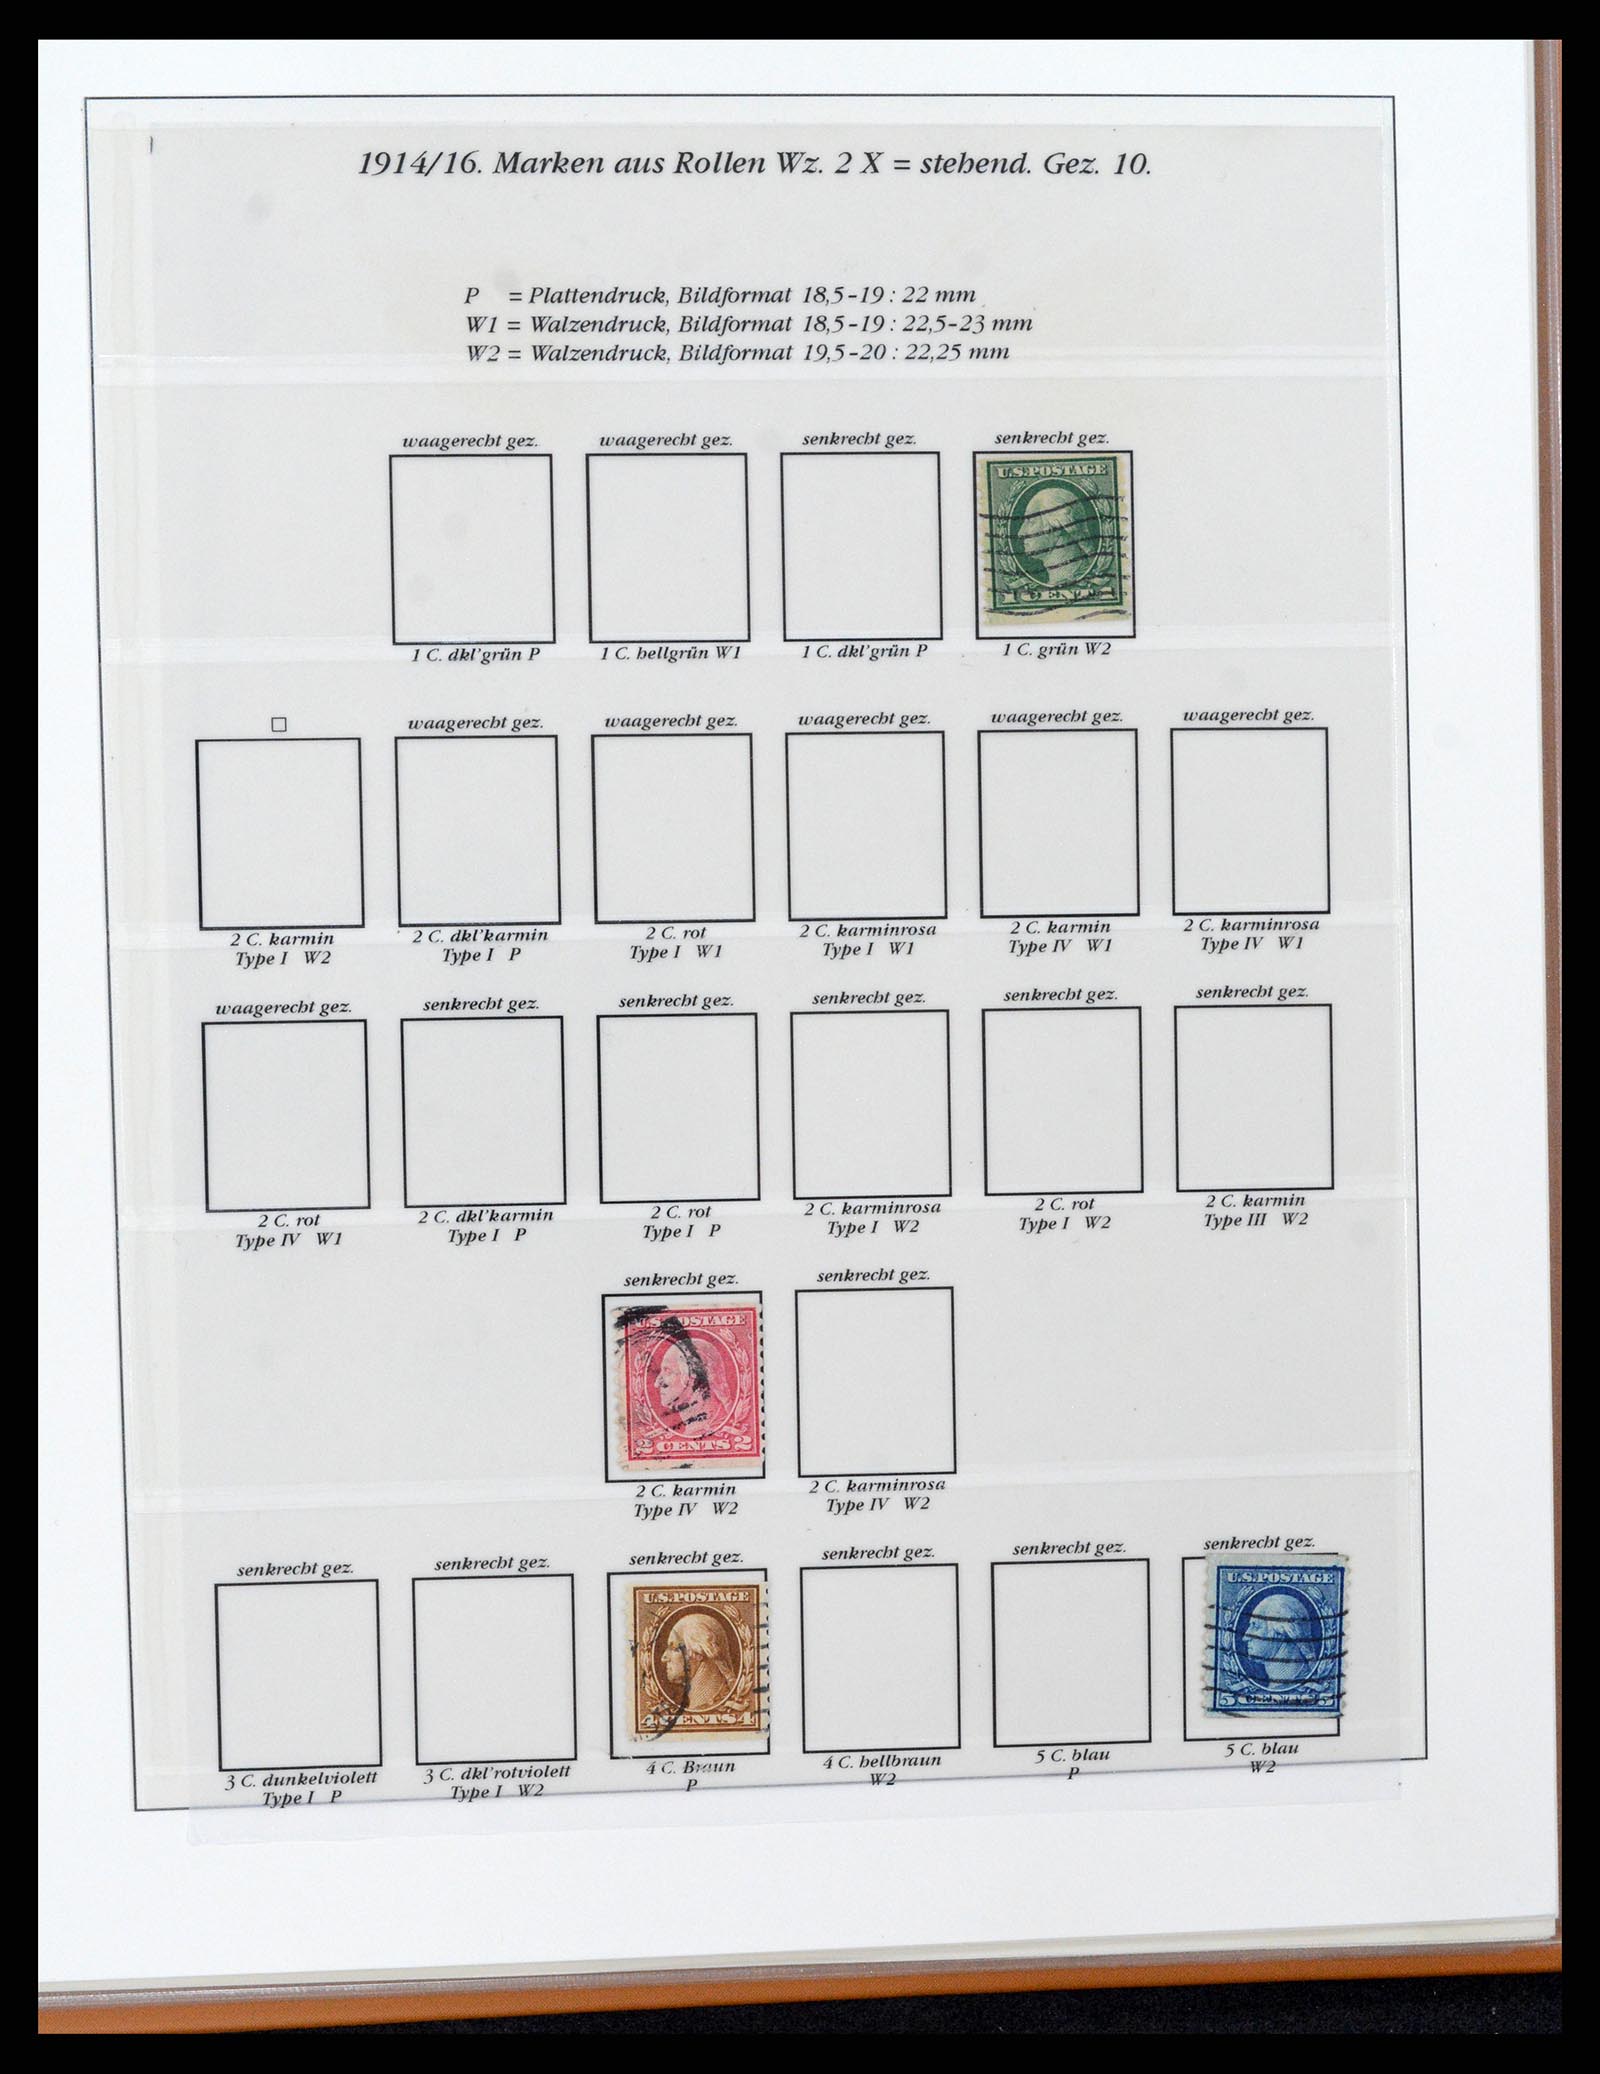 37653 054 - Stamp collection 37653 USA 1870-1954.